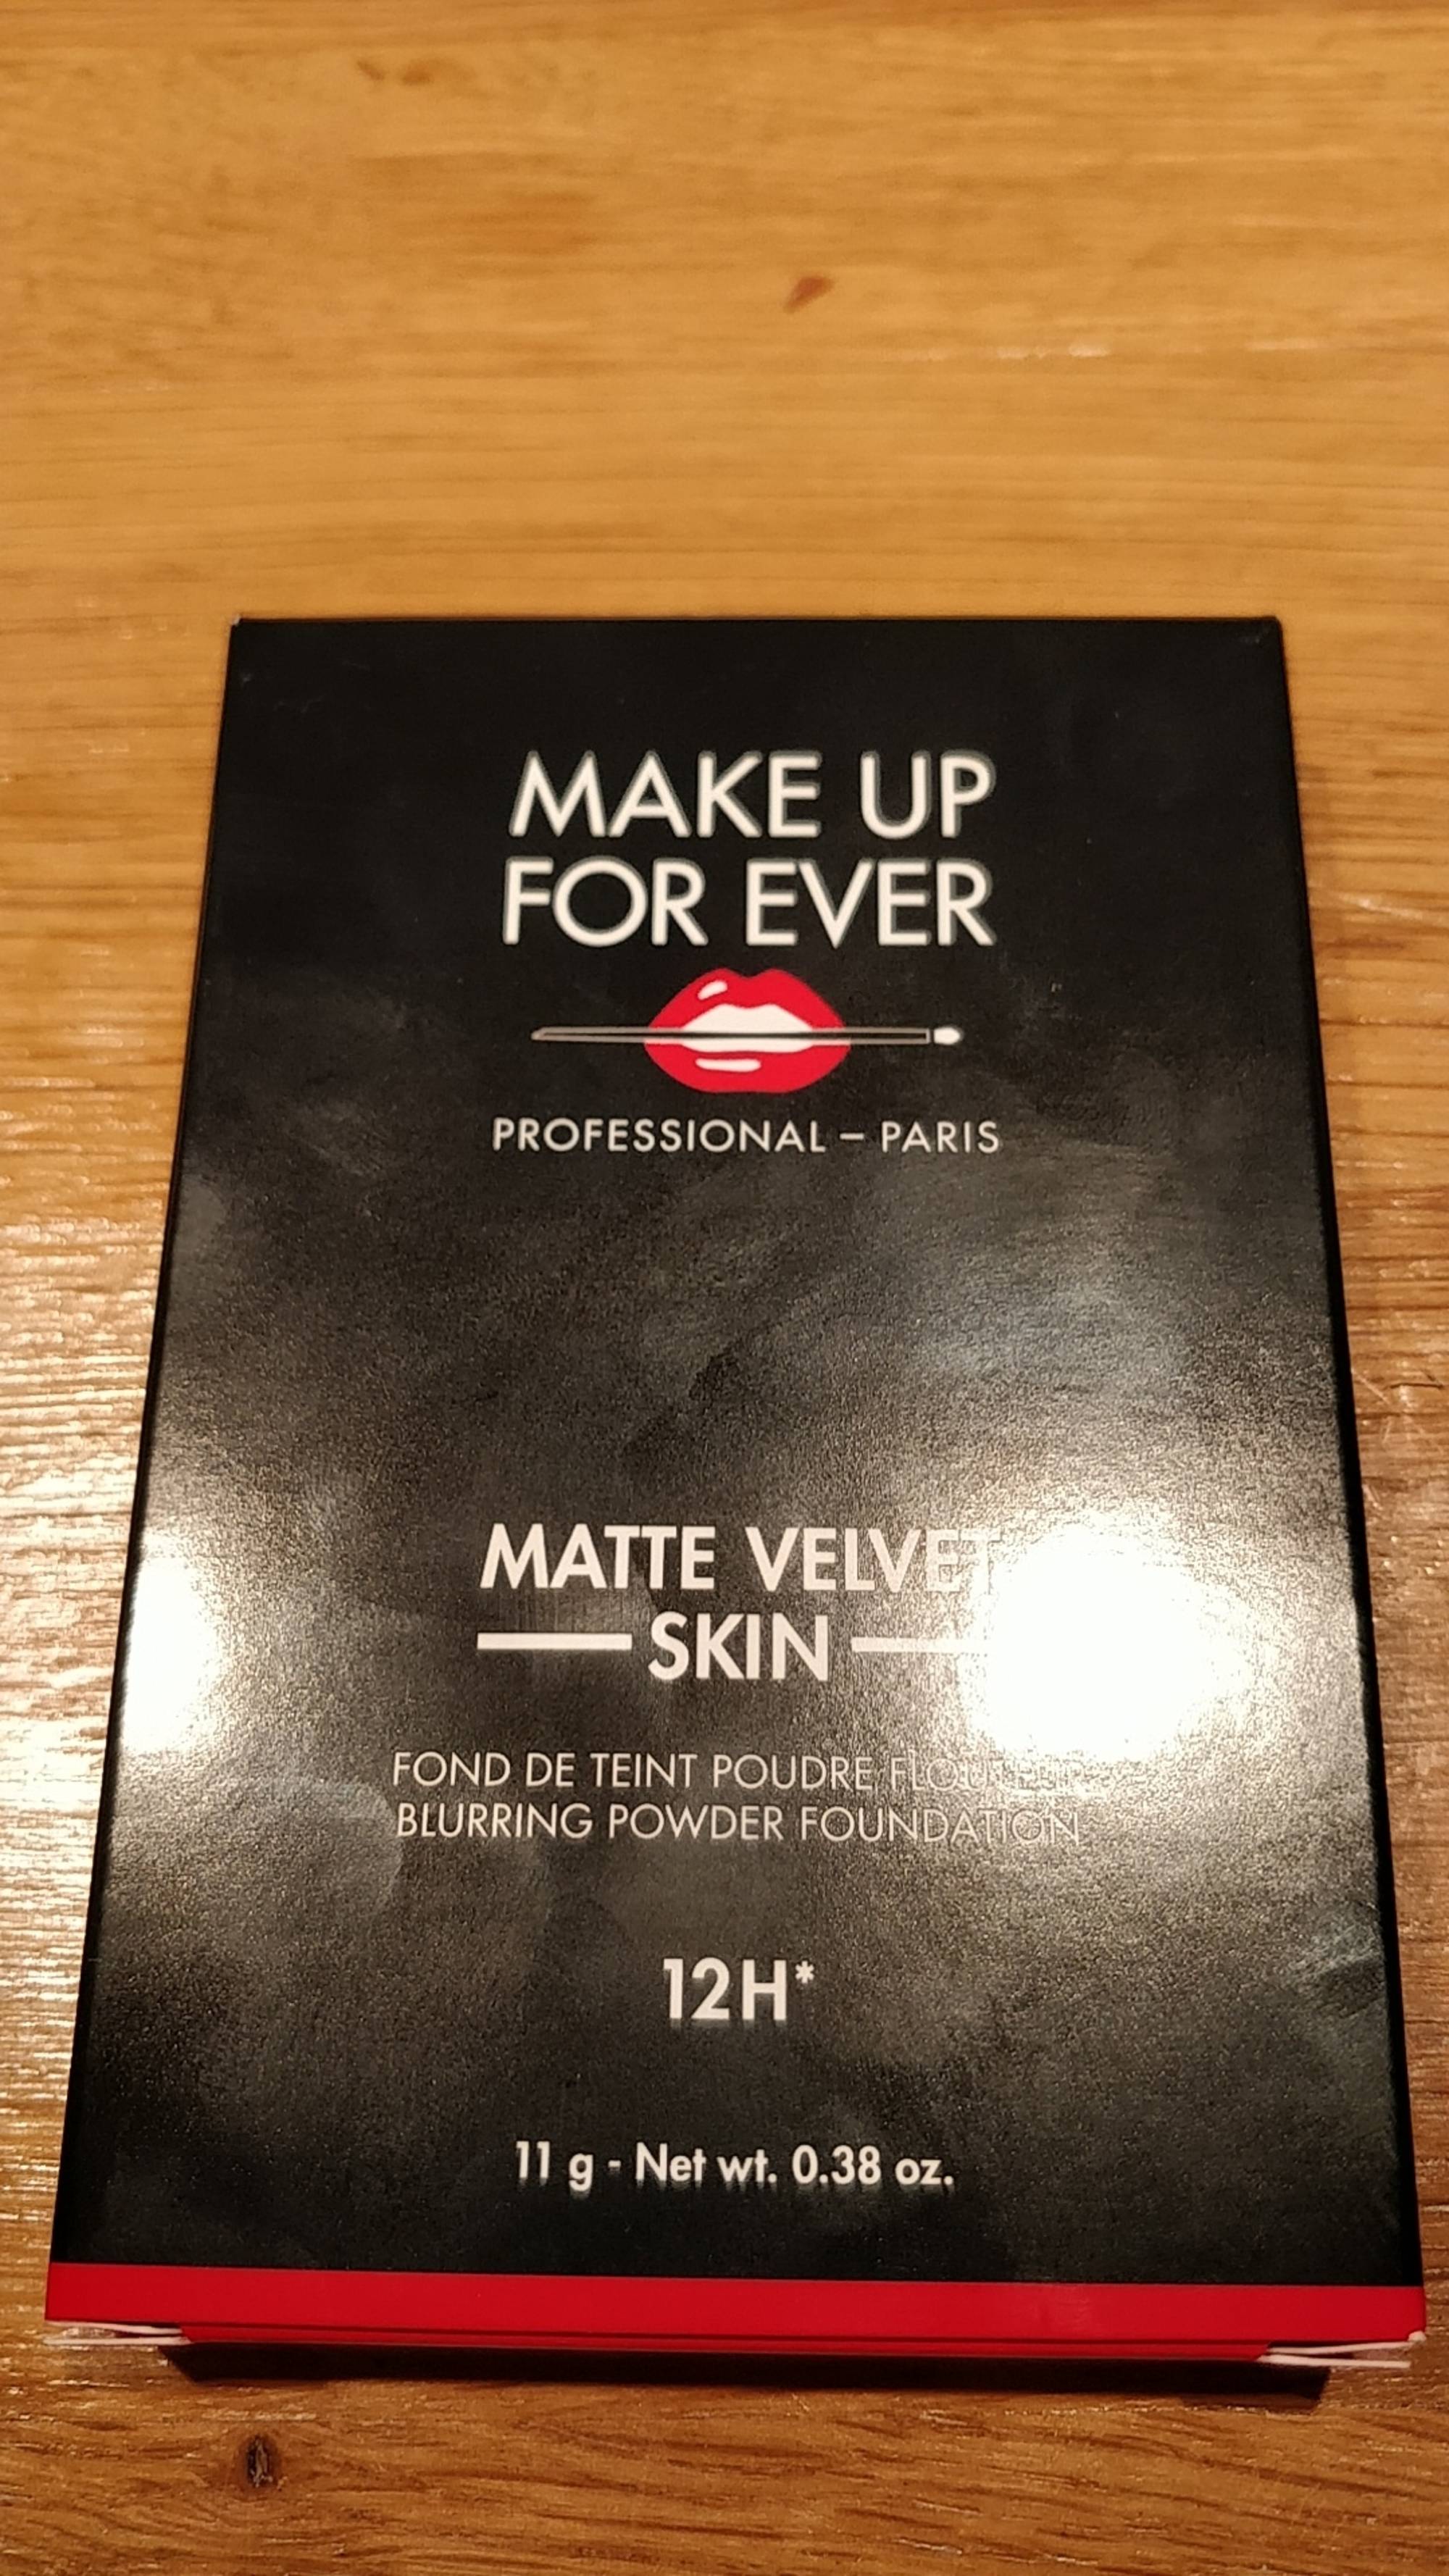 MAKE UP FOR EVER - Matte velvet skin - Fond de teint poudre flou